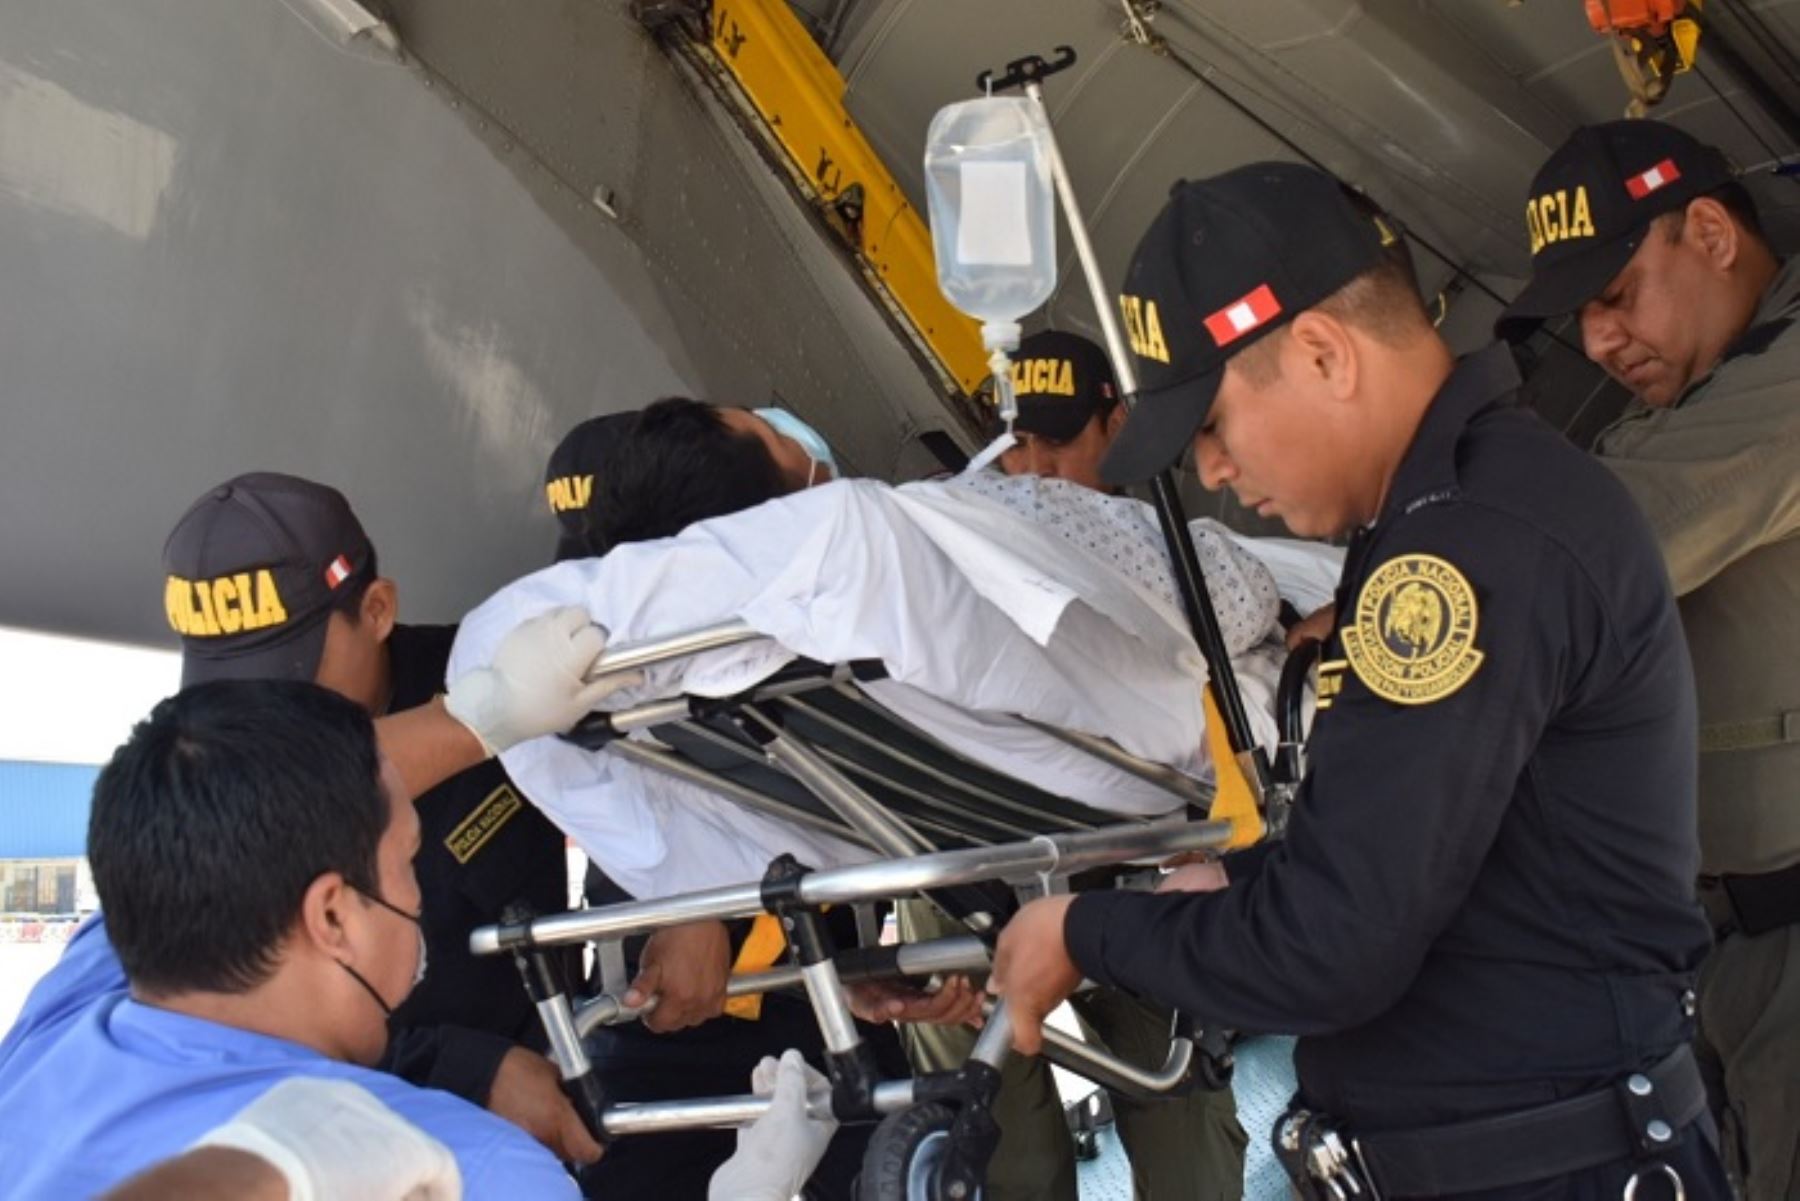 Los dos efectivos fueron trasladados de inmediato en dos ambulancias hacia el hospital central PNP Luis N. Sáenz, ubicado en el distrito de Jesús María.